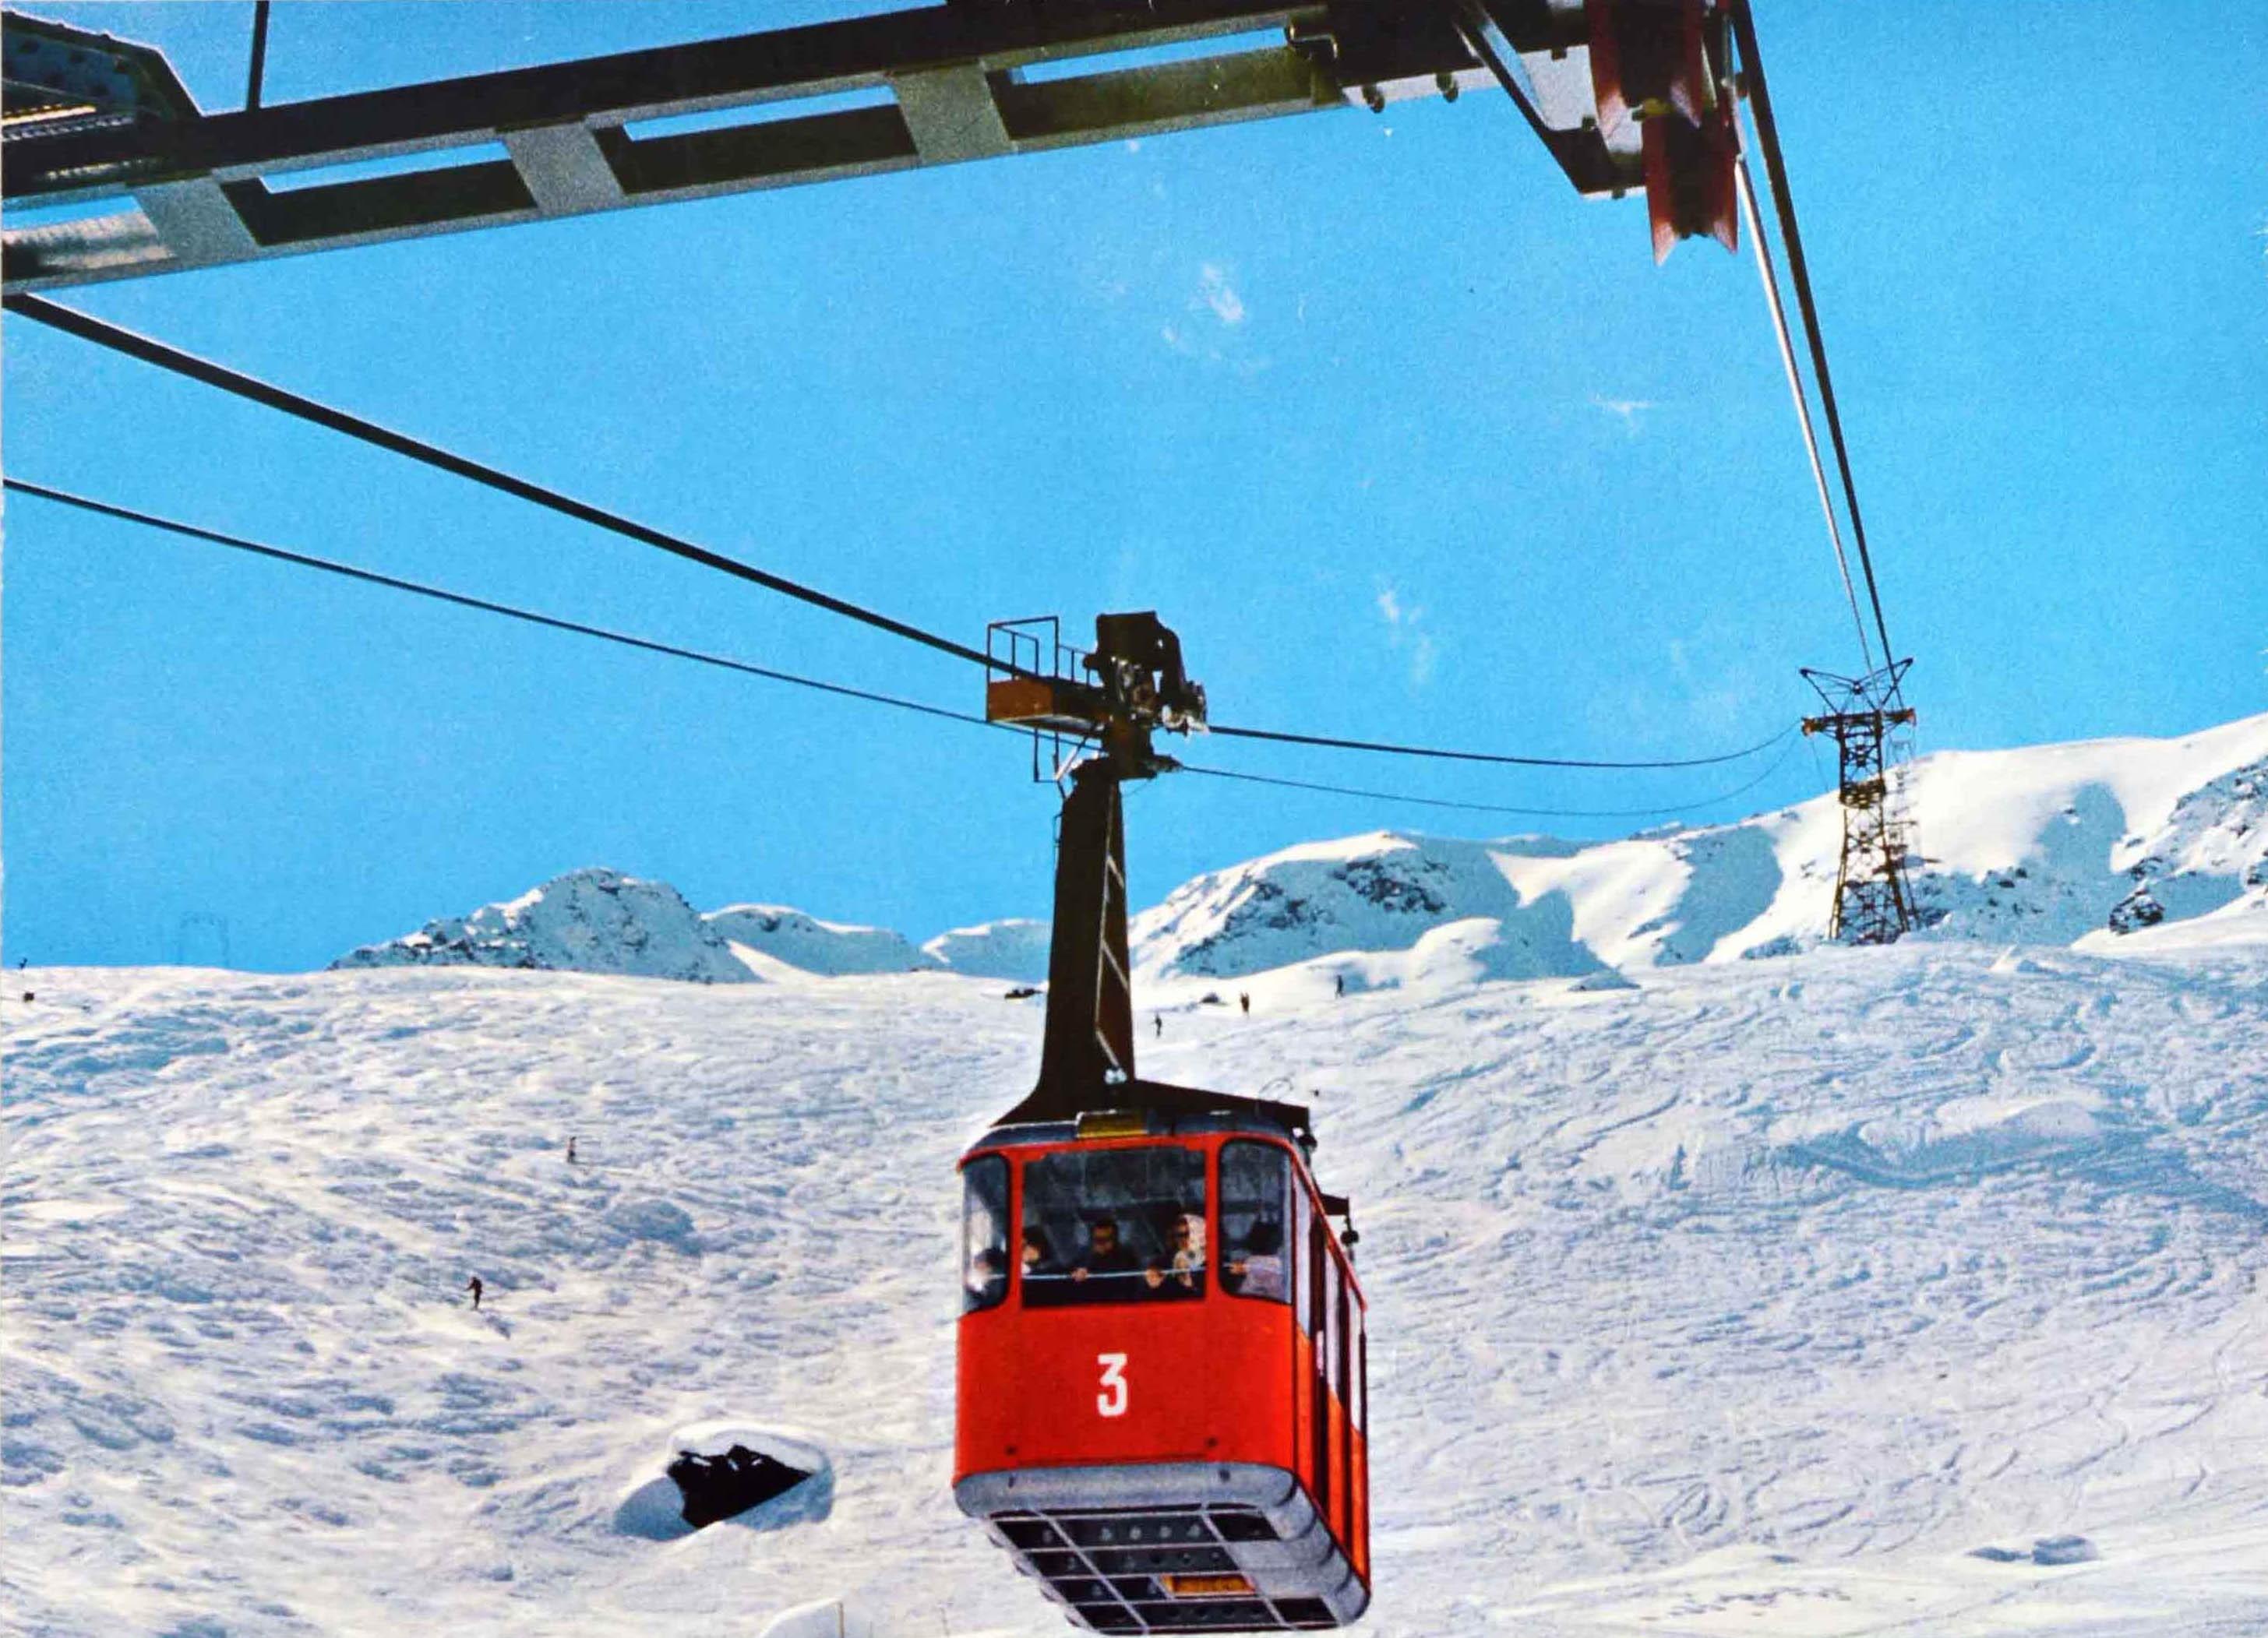 Original Vintage-Wintersport-Reiseplakat für Tirol Österreich Österreich mit einer Fotografie des Skigebiets im Ötztal, die Skifahrer zeigt, die im dichten Schnee sitzen und sich auf Liegestühlen sonnen, unter einer roten Seilbahngondel mit der